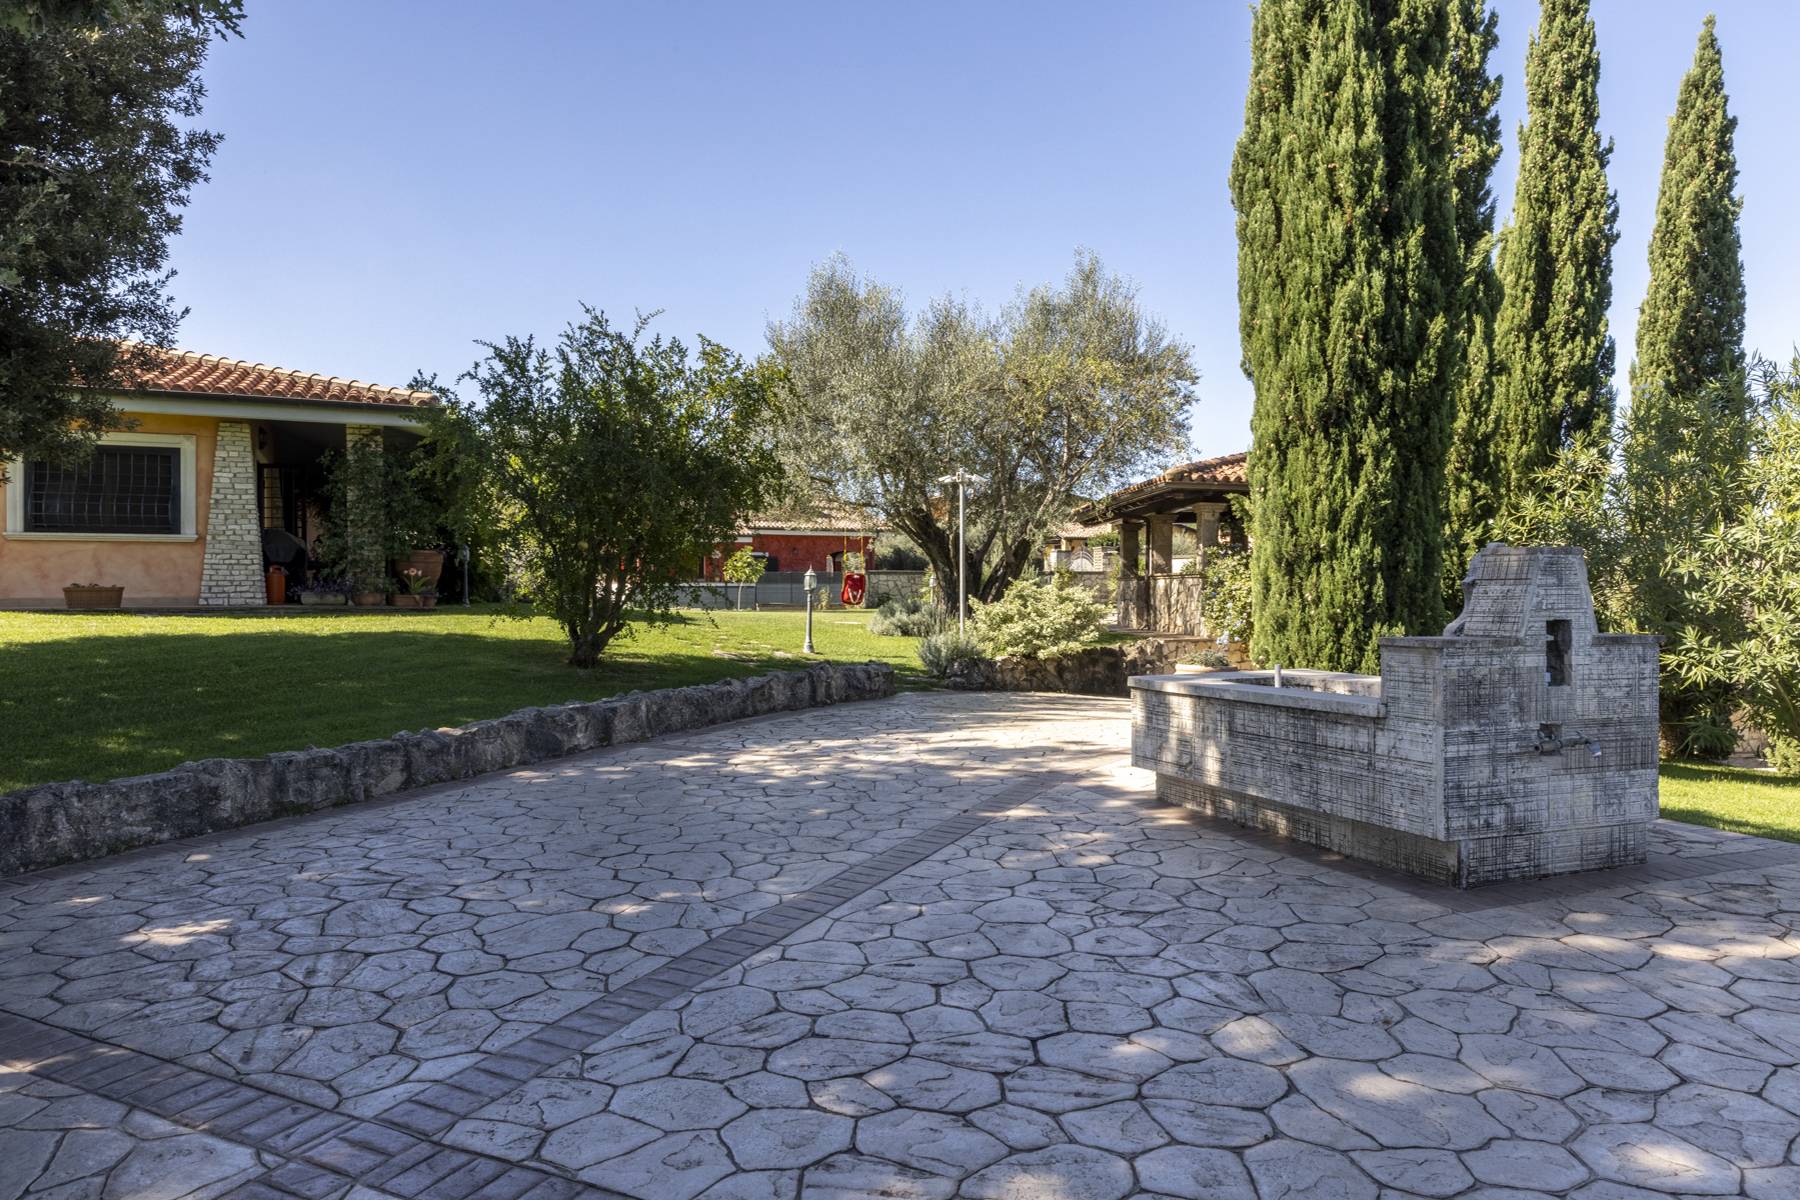 Villa in Vendita a Riano: 5 locali, 500 mq - Foto 14